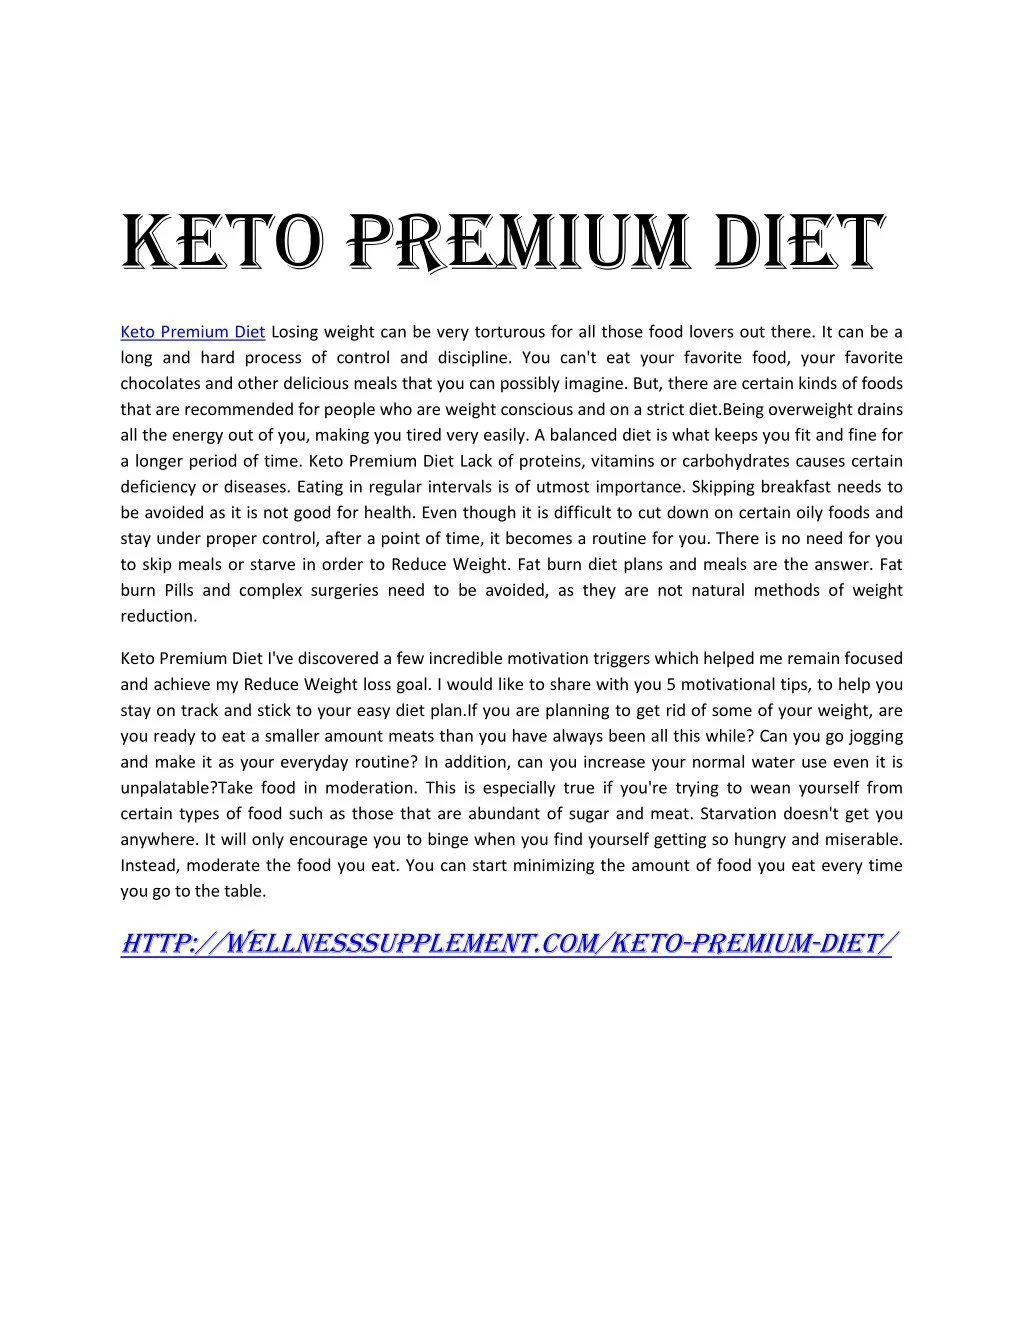 keto premium diet